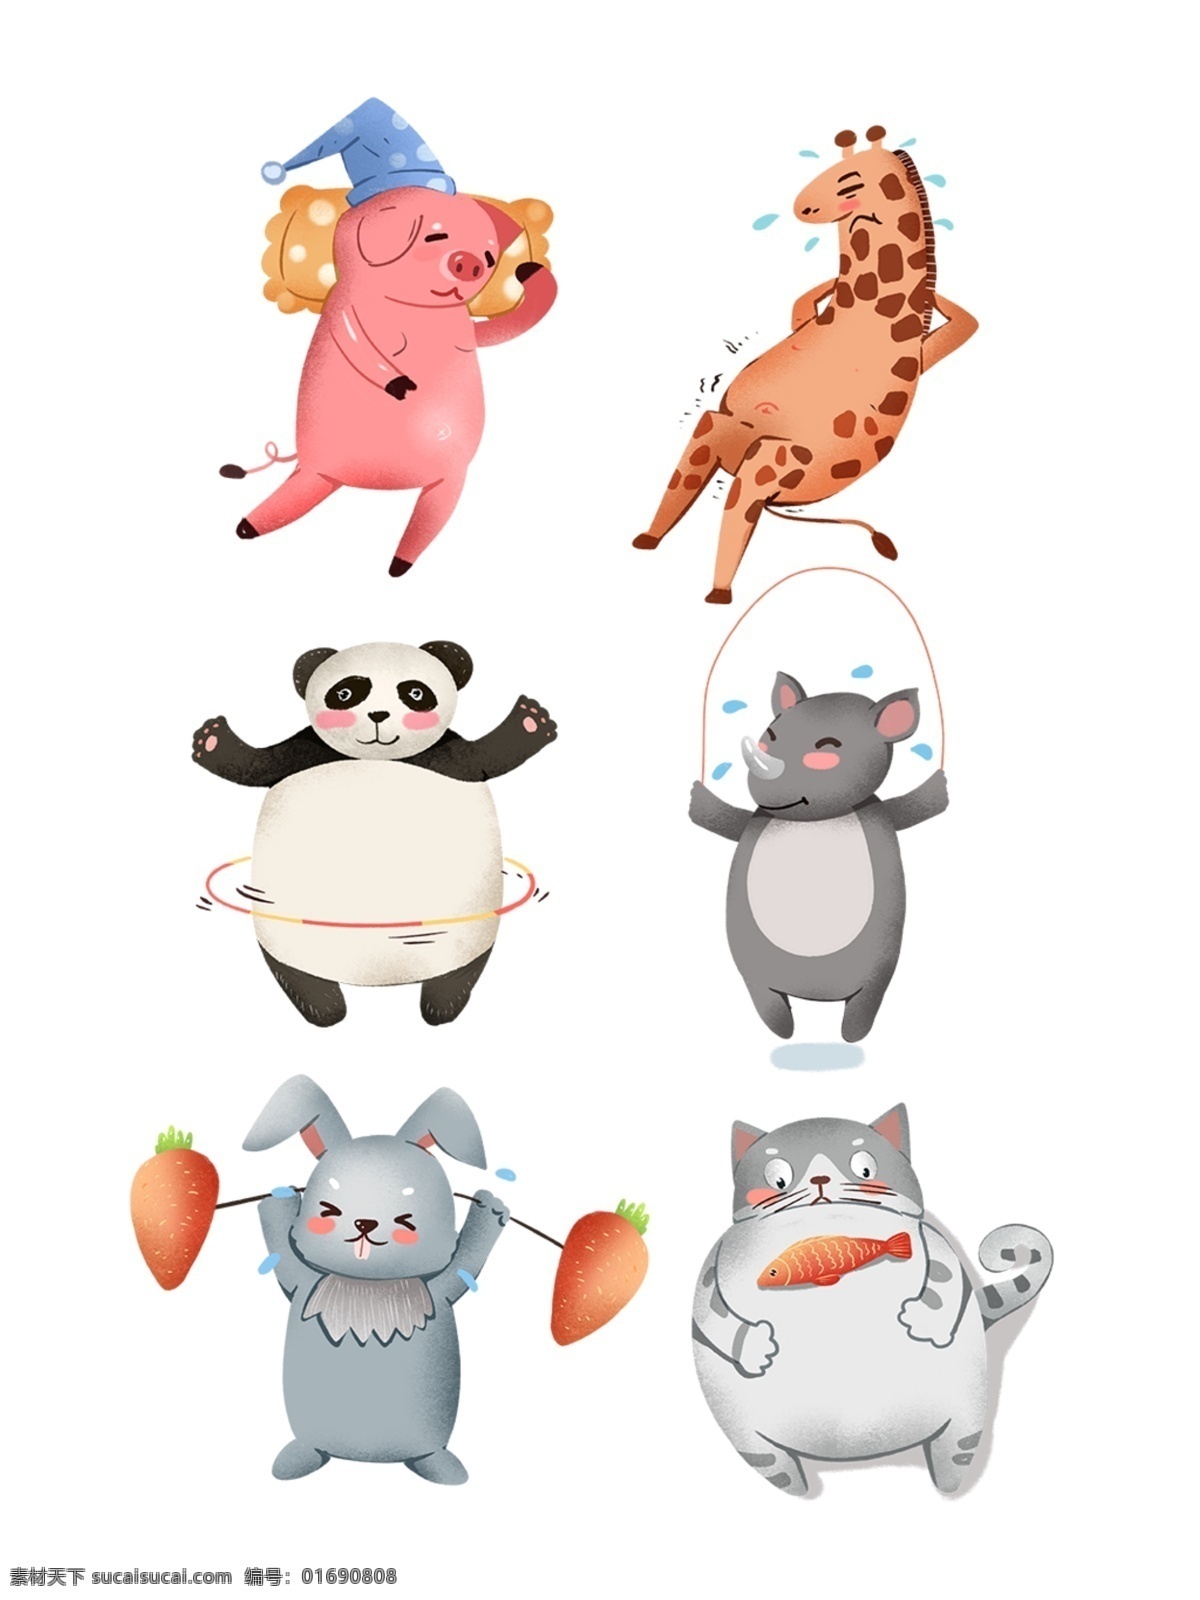 肥胖 可爱 动物 拟人化 肥胖动物 可爱动物 动画插画 拟人动物 拟人 减肥 运动 健身 动物手绘